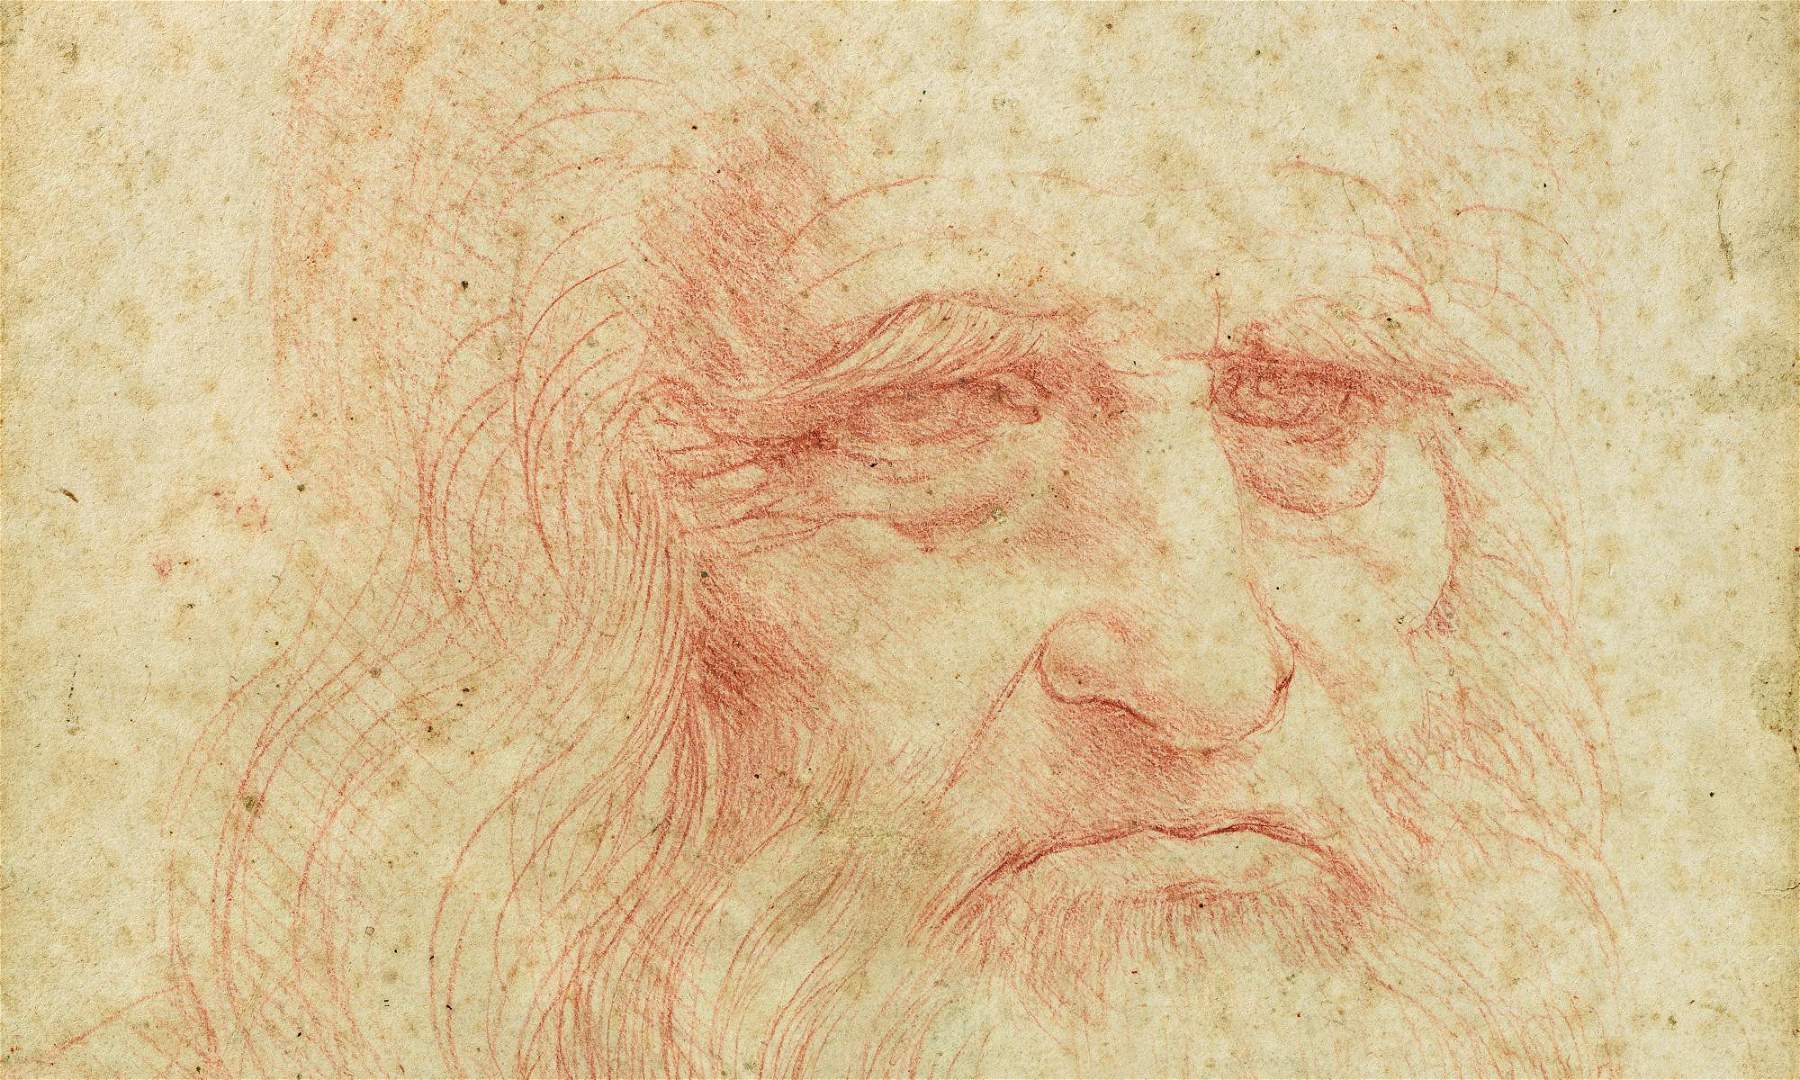 I depositi della Biblioteca Reale di Torino si aprono virtualmente al pubblico mostrando i capolavori di Leonardo